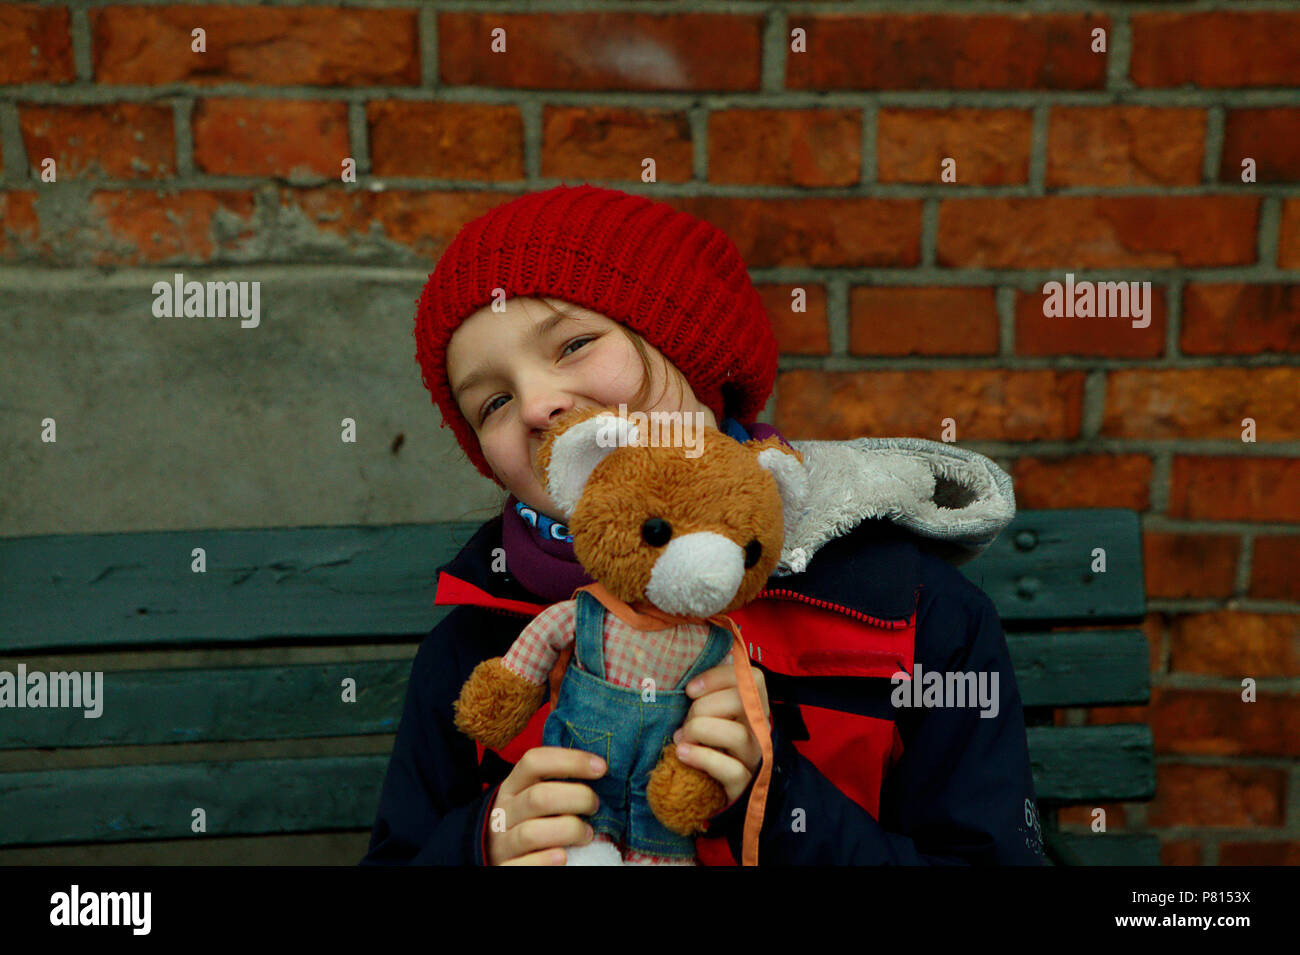 Ragazza nel cappuccio rosso con Teddy bear seduta sul banco in legno Foto Stock